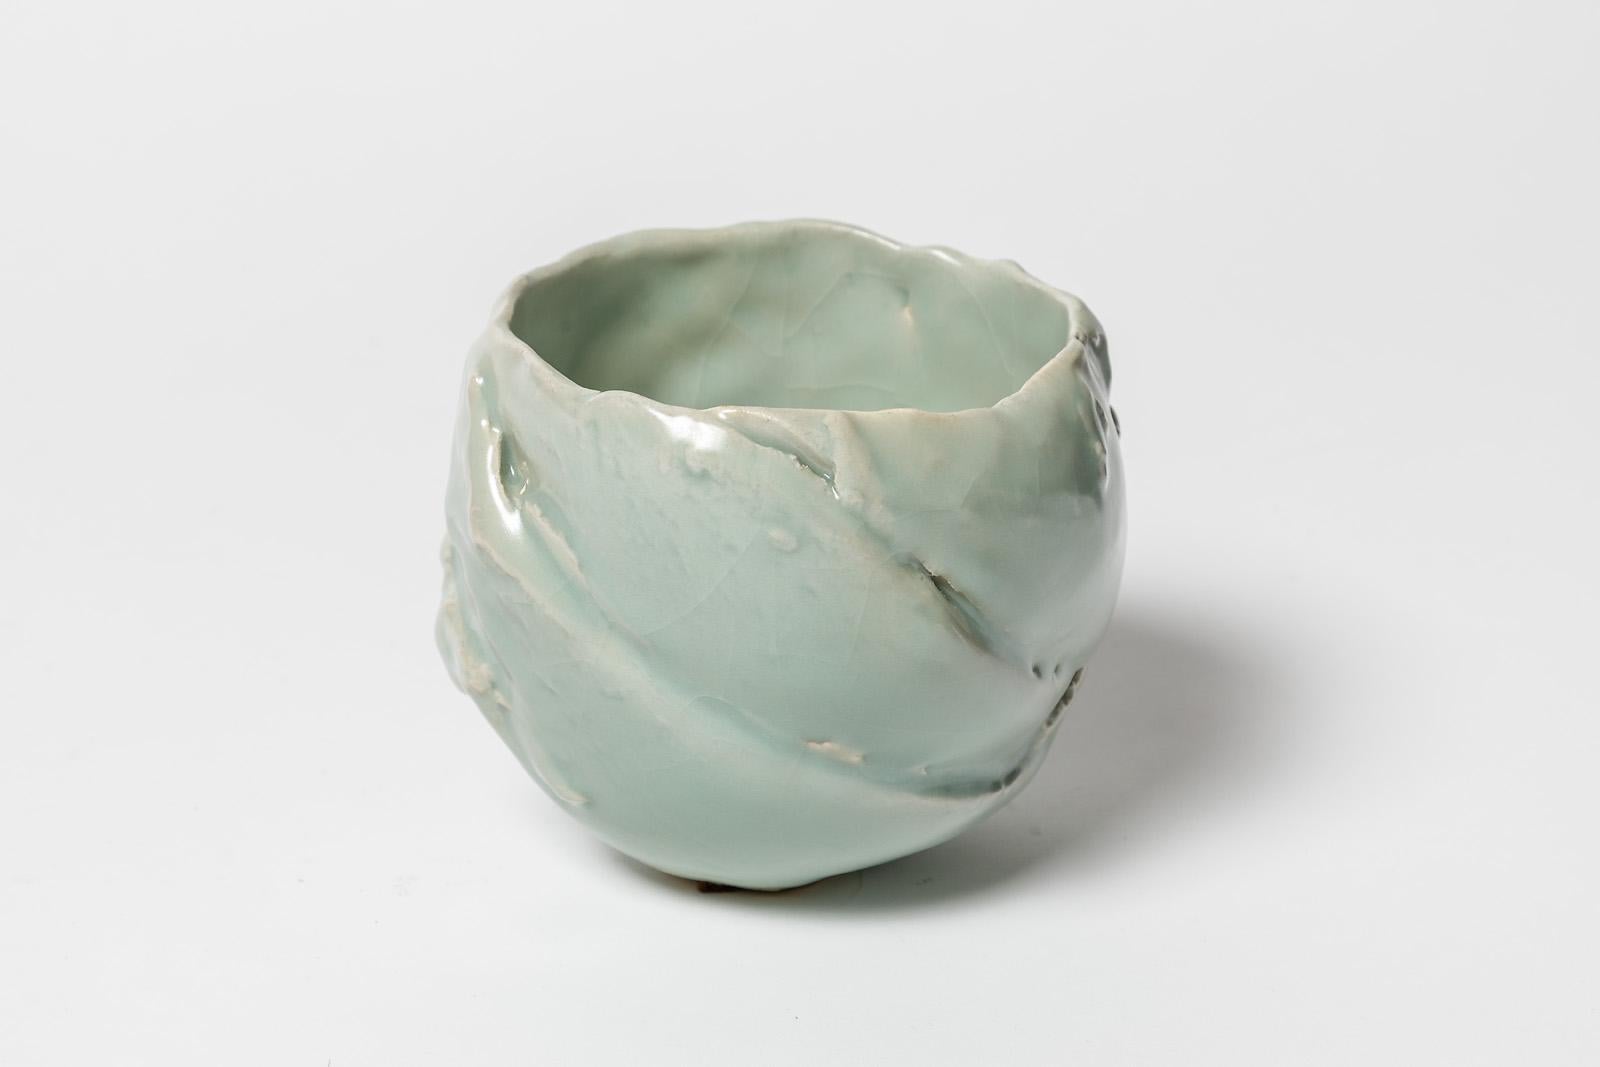 Beaux Arts Ceramic Bowl with Celadon Glaze Decoration, by Jean-François Fouhilloux For Sale